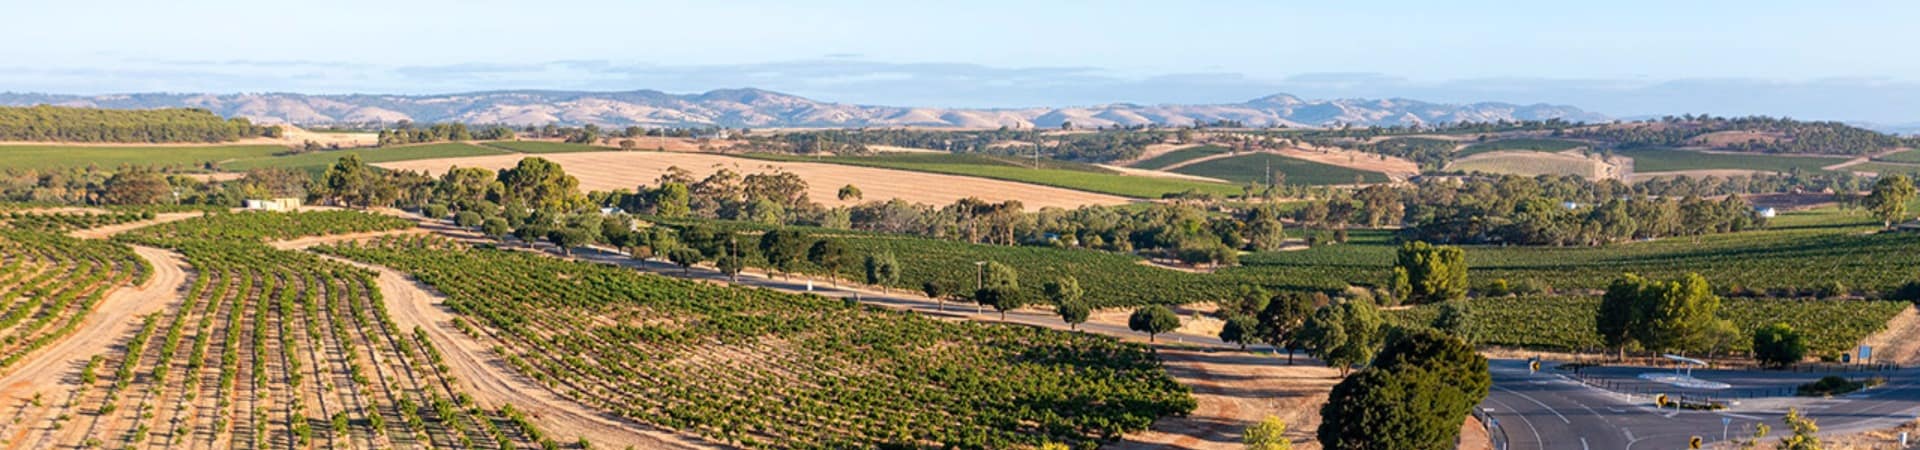 Tourism australia south australia vinicolas em barrosa valley